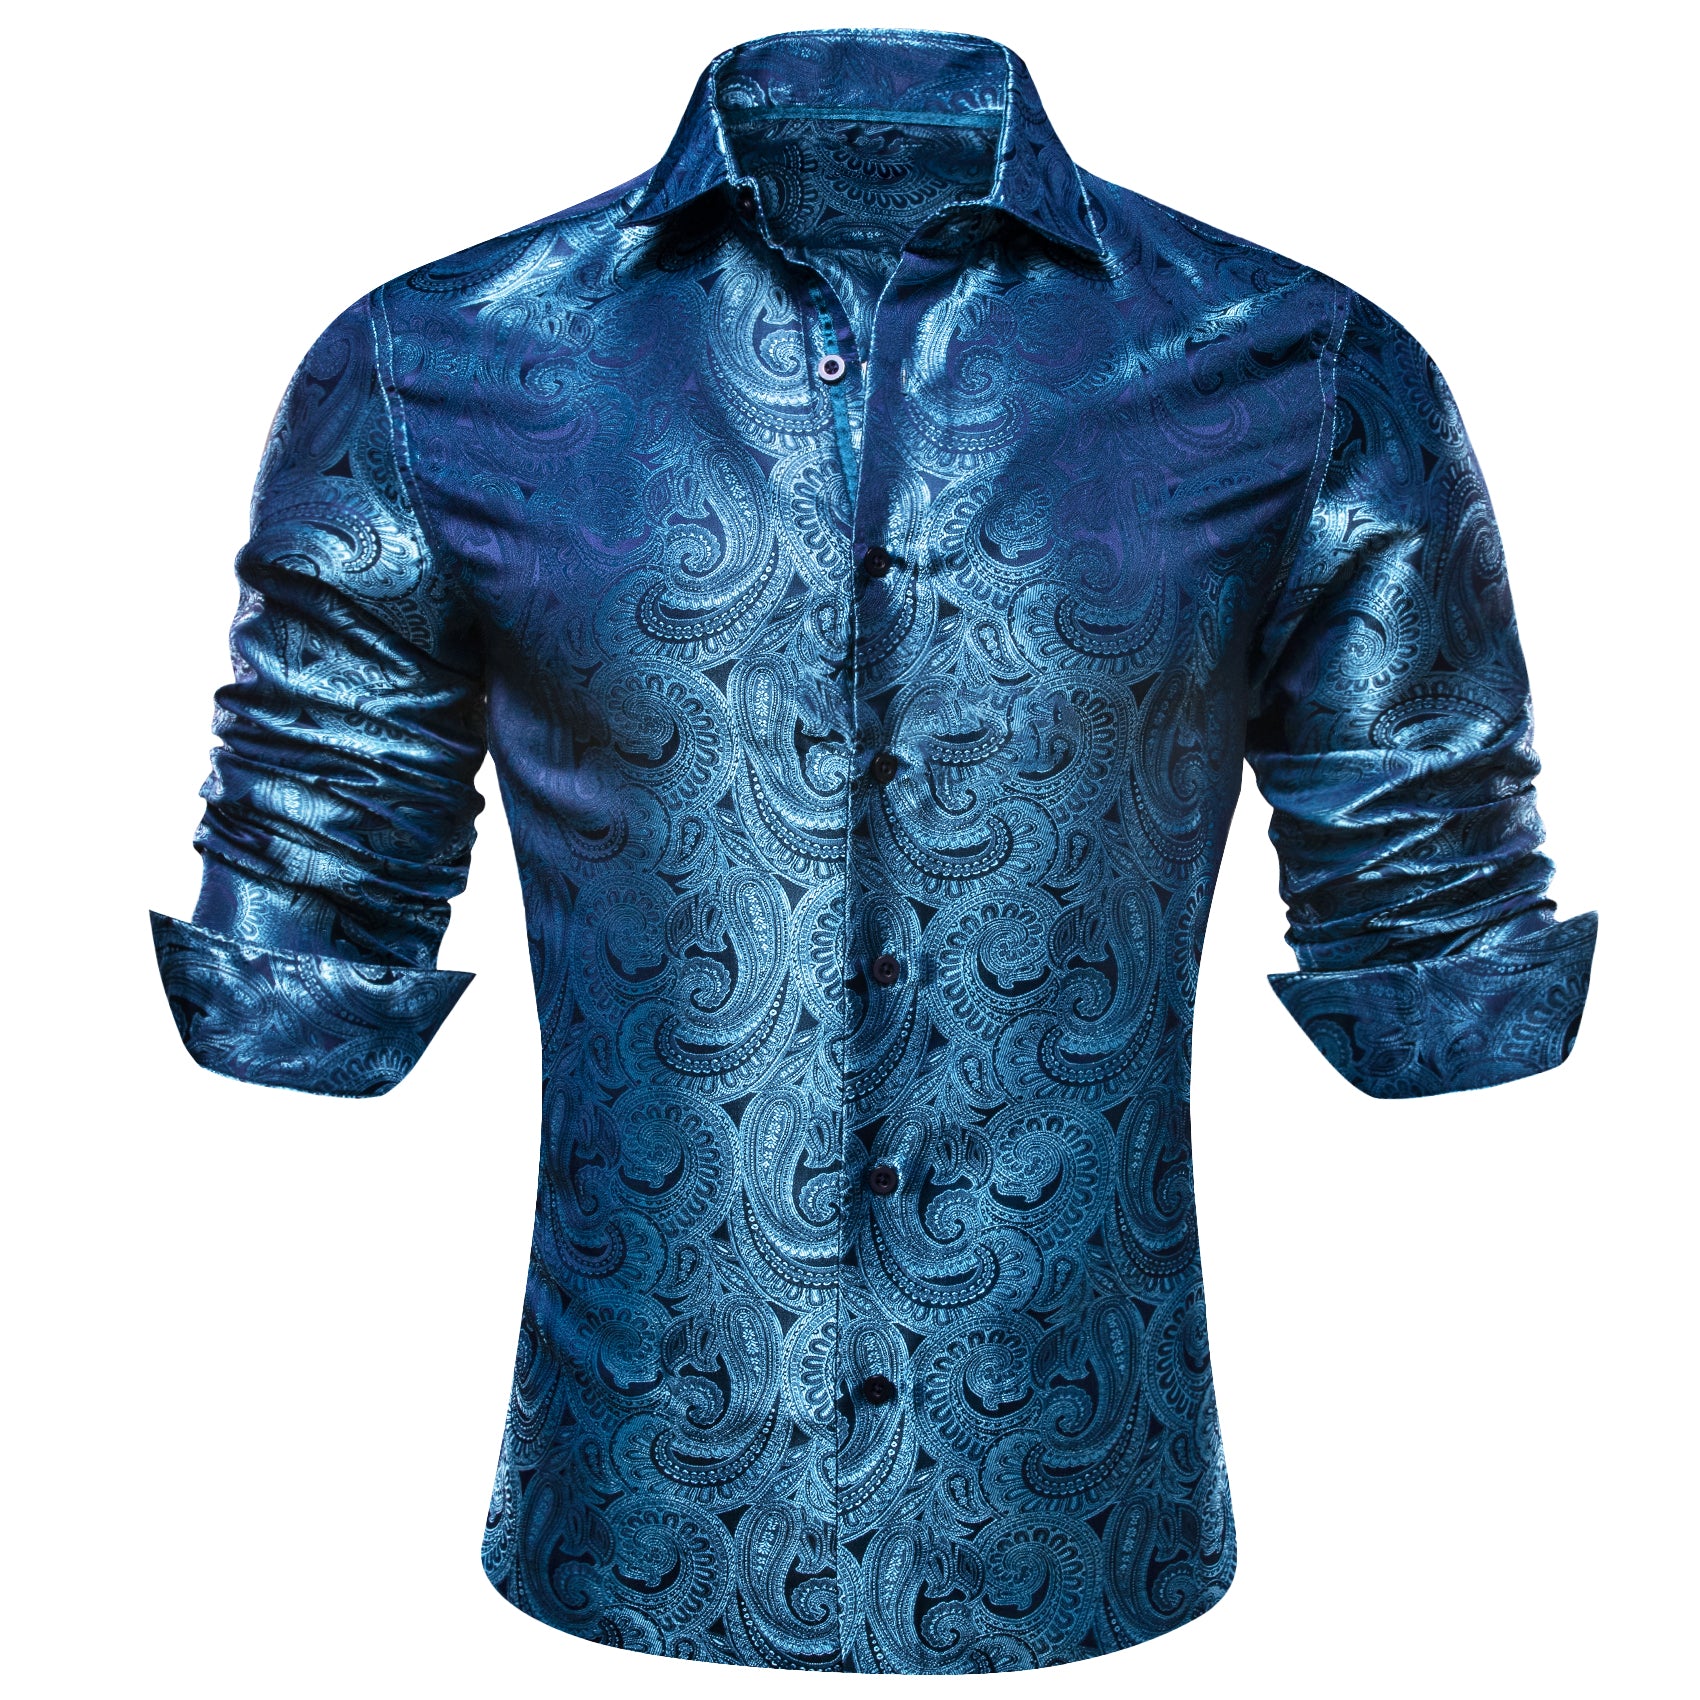 Barry.wang Ocean Blue Paisley Silk Men's Shirt